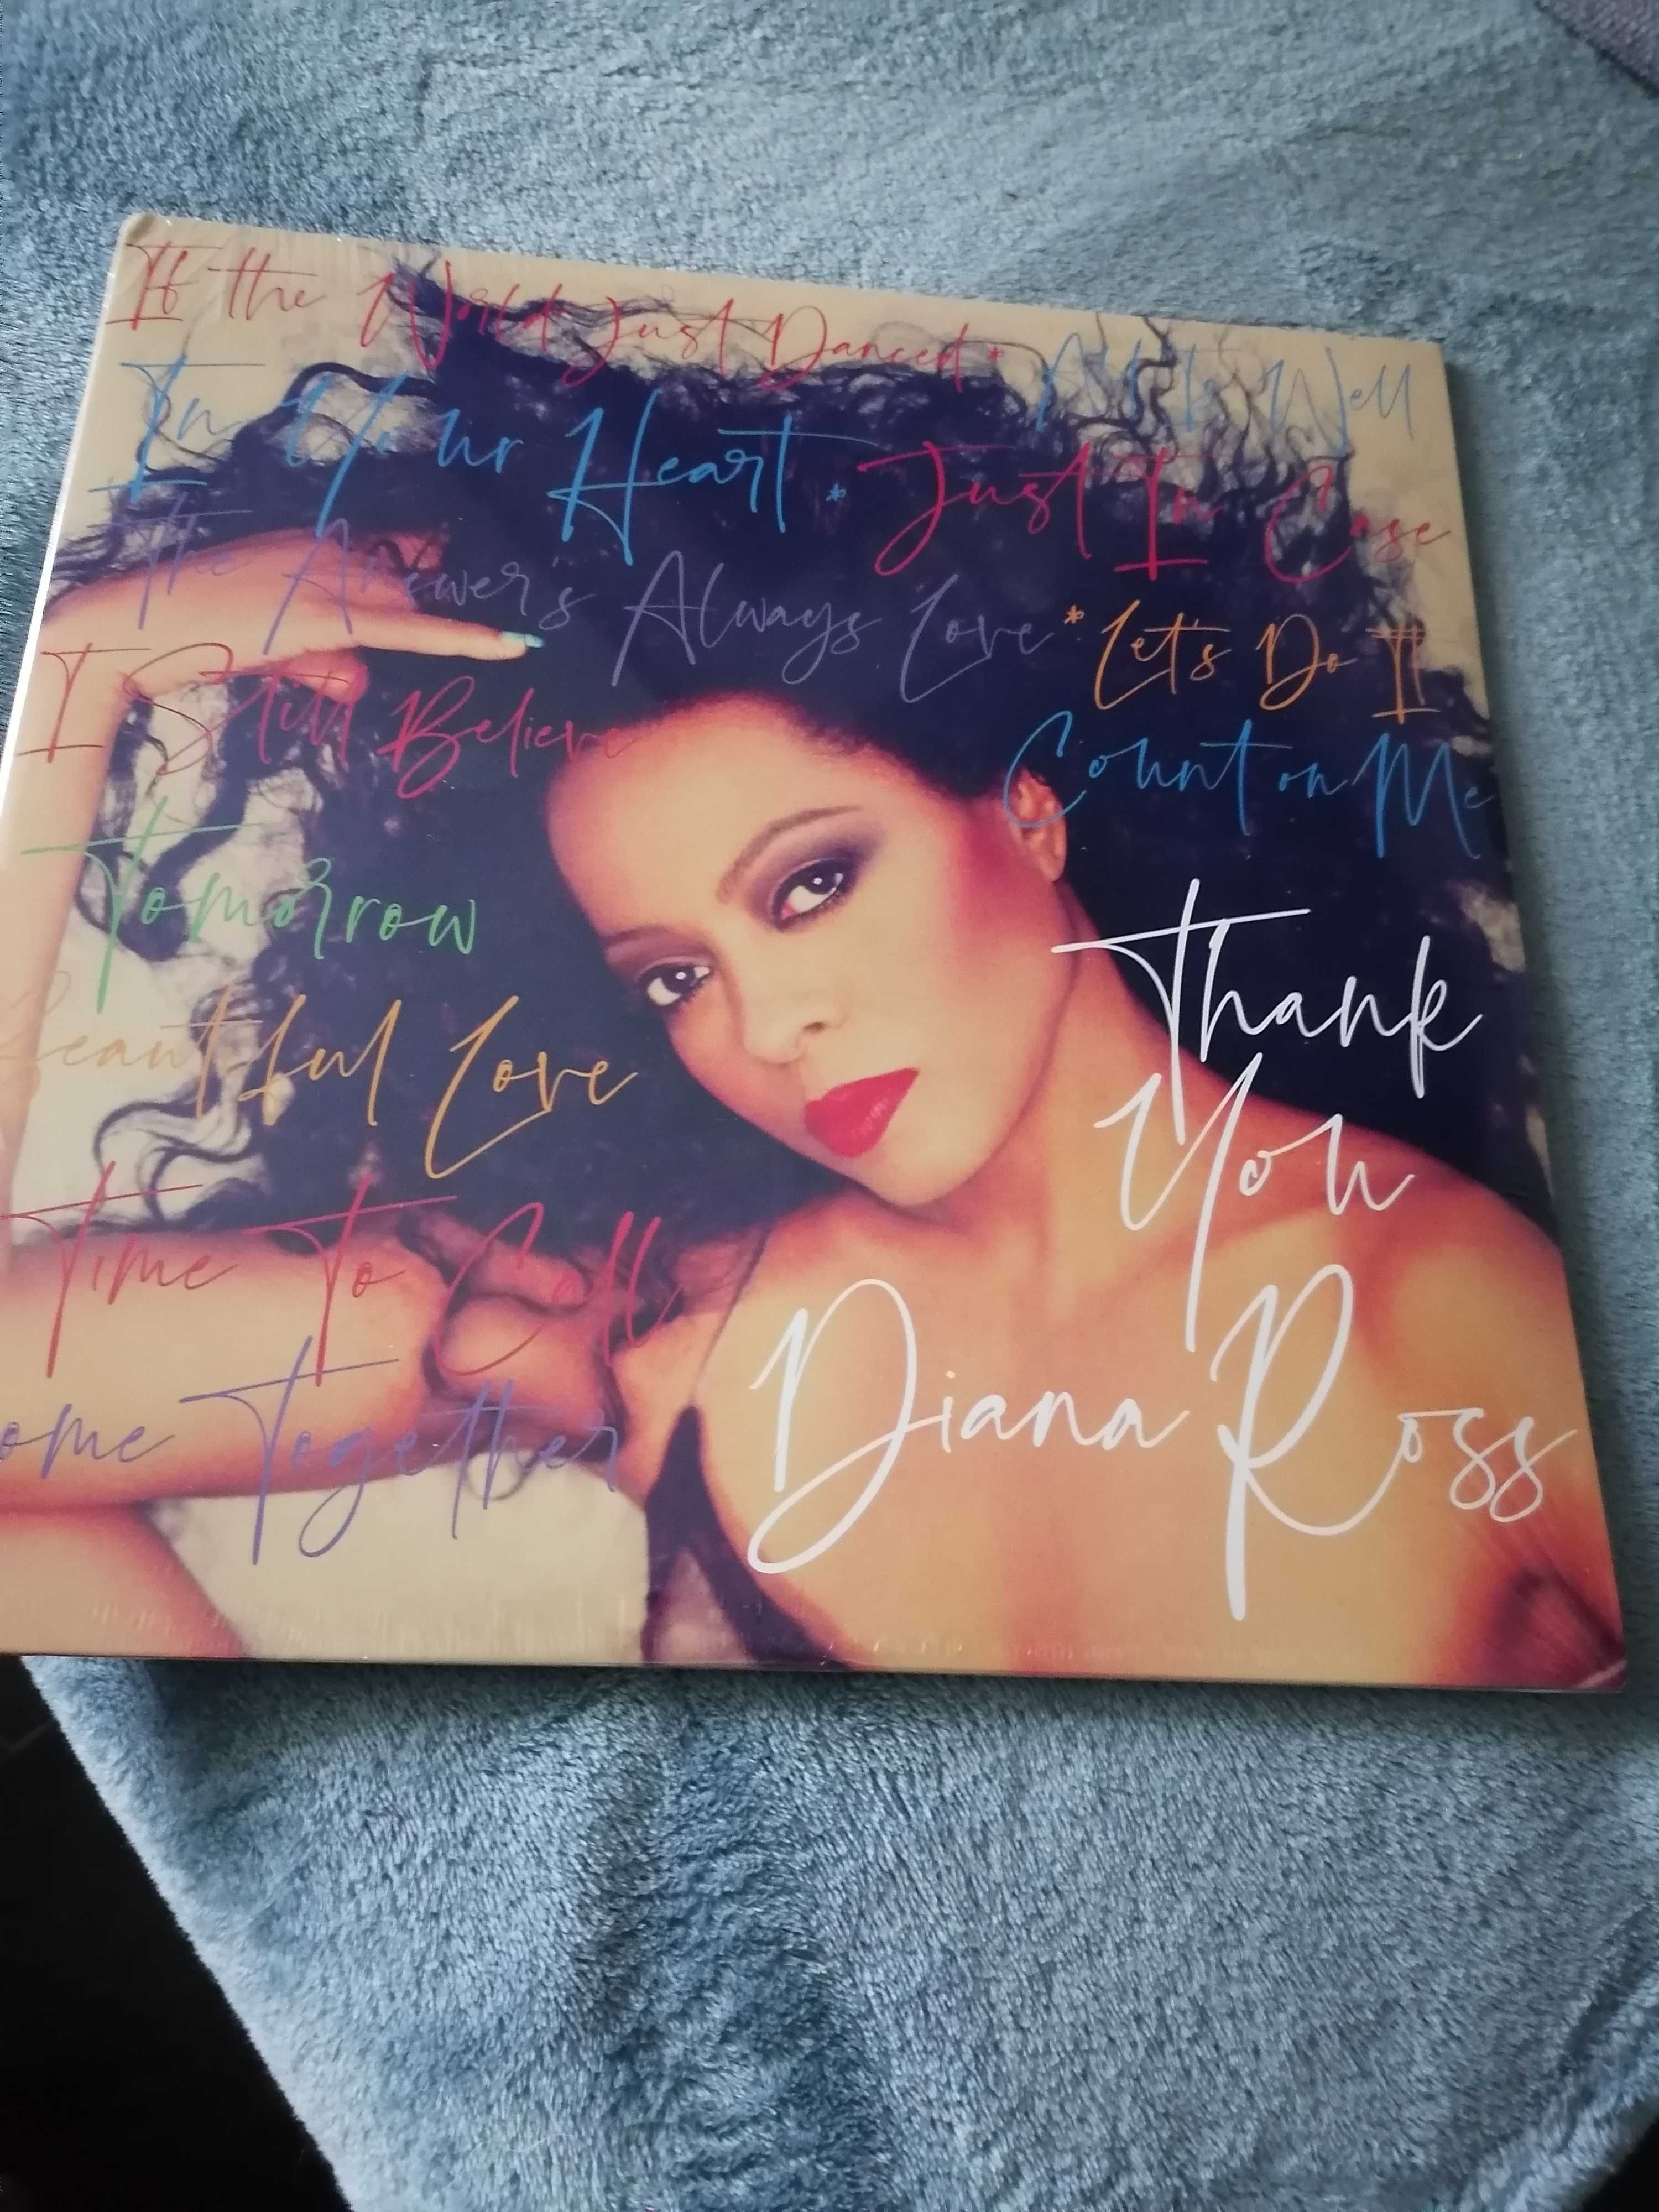 2 plytowy album Diana ROSS thank You wydanie 2021 Eu  płyty winylowe